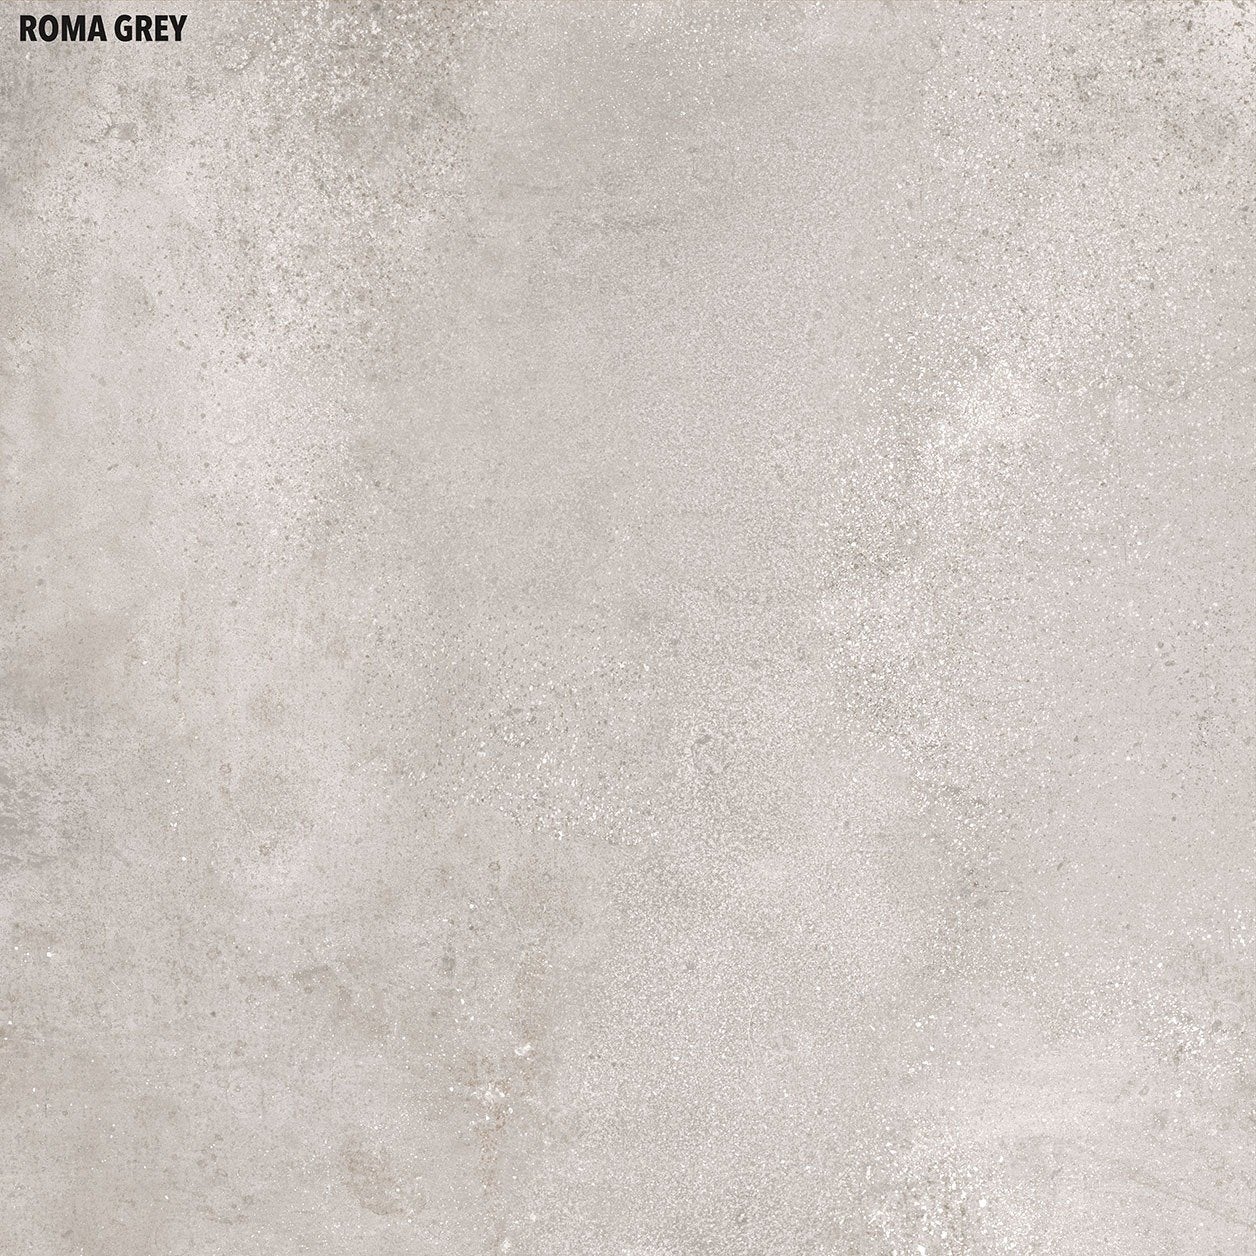 Roma Grey 400x400mm Rectified Matt Porcelain Floor Tile